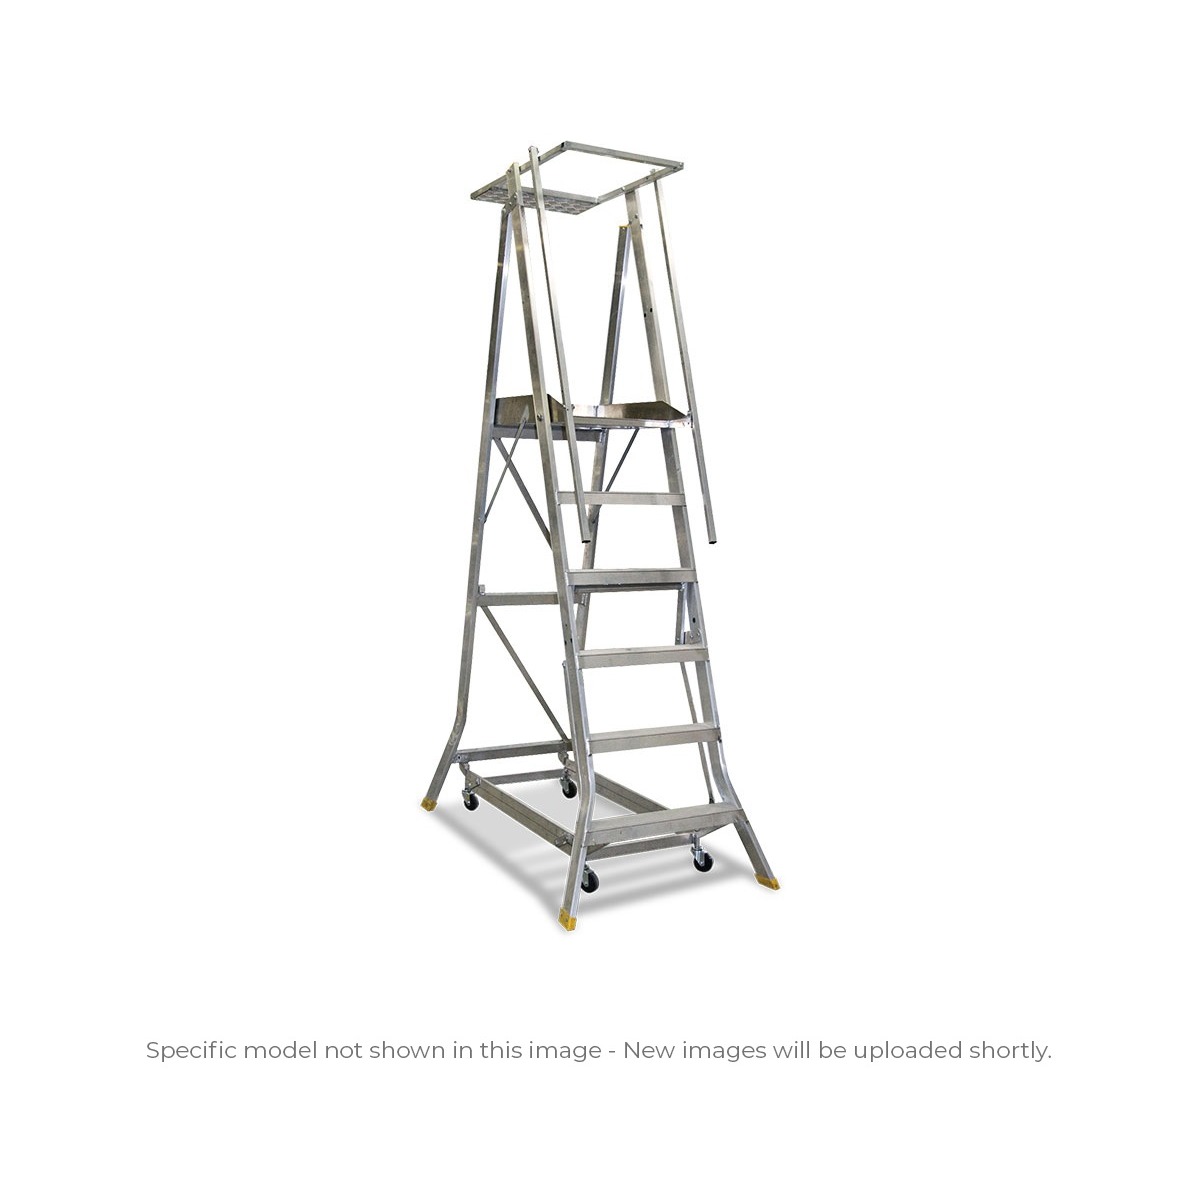 Model image of hd platform ladder